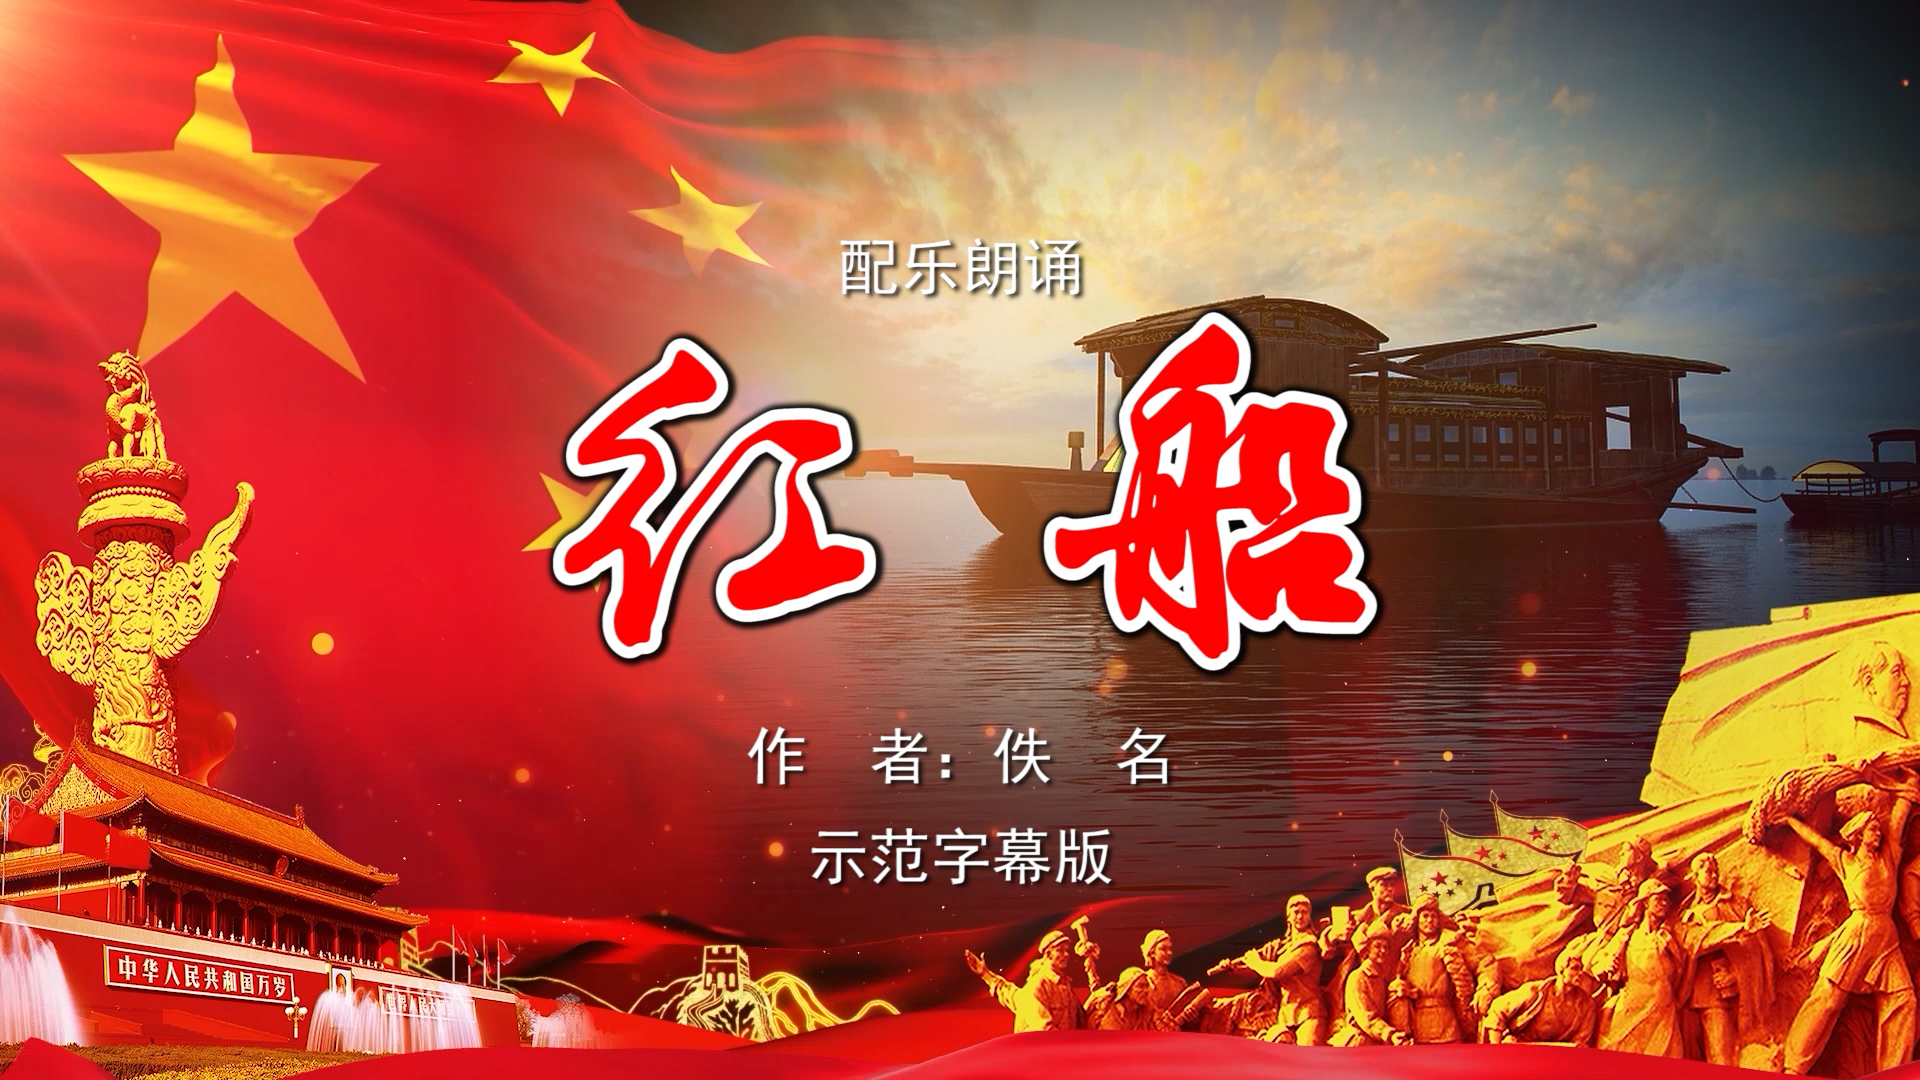 红船 共产党宣言陈望道吃粽子蘸墨的故事诗歌朗诵配乐伴奏舞台演出LED背景视频素材TV